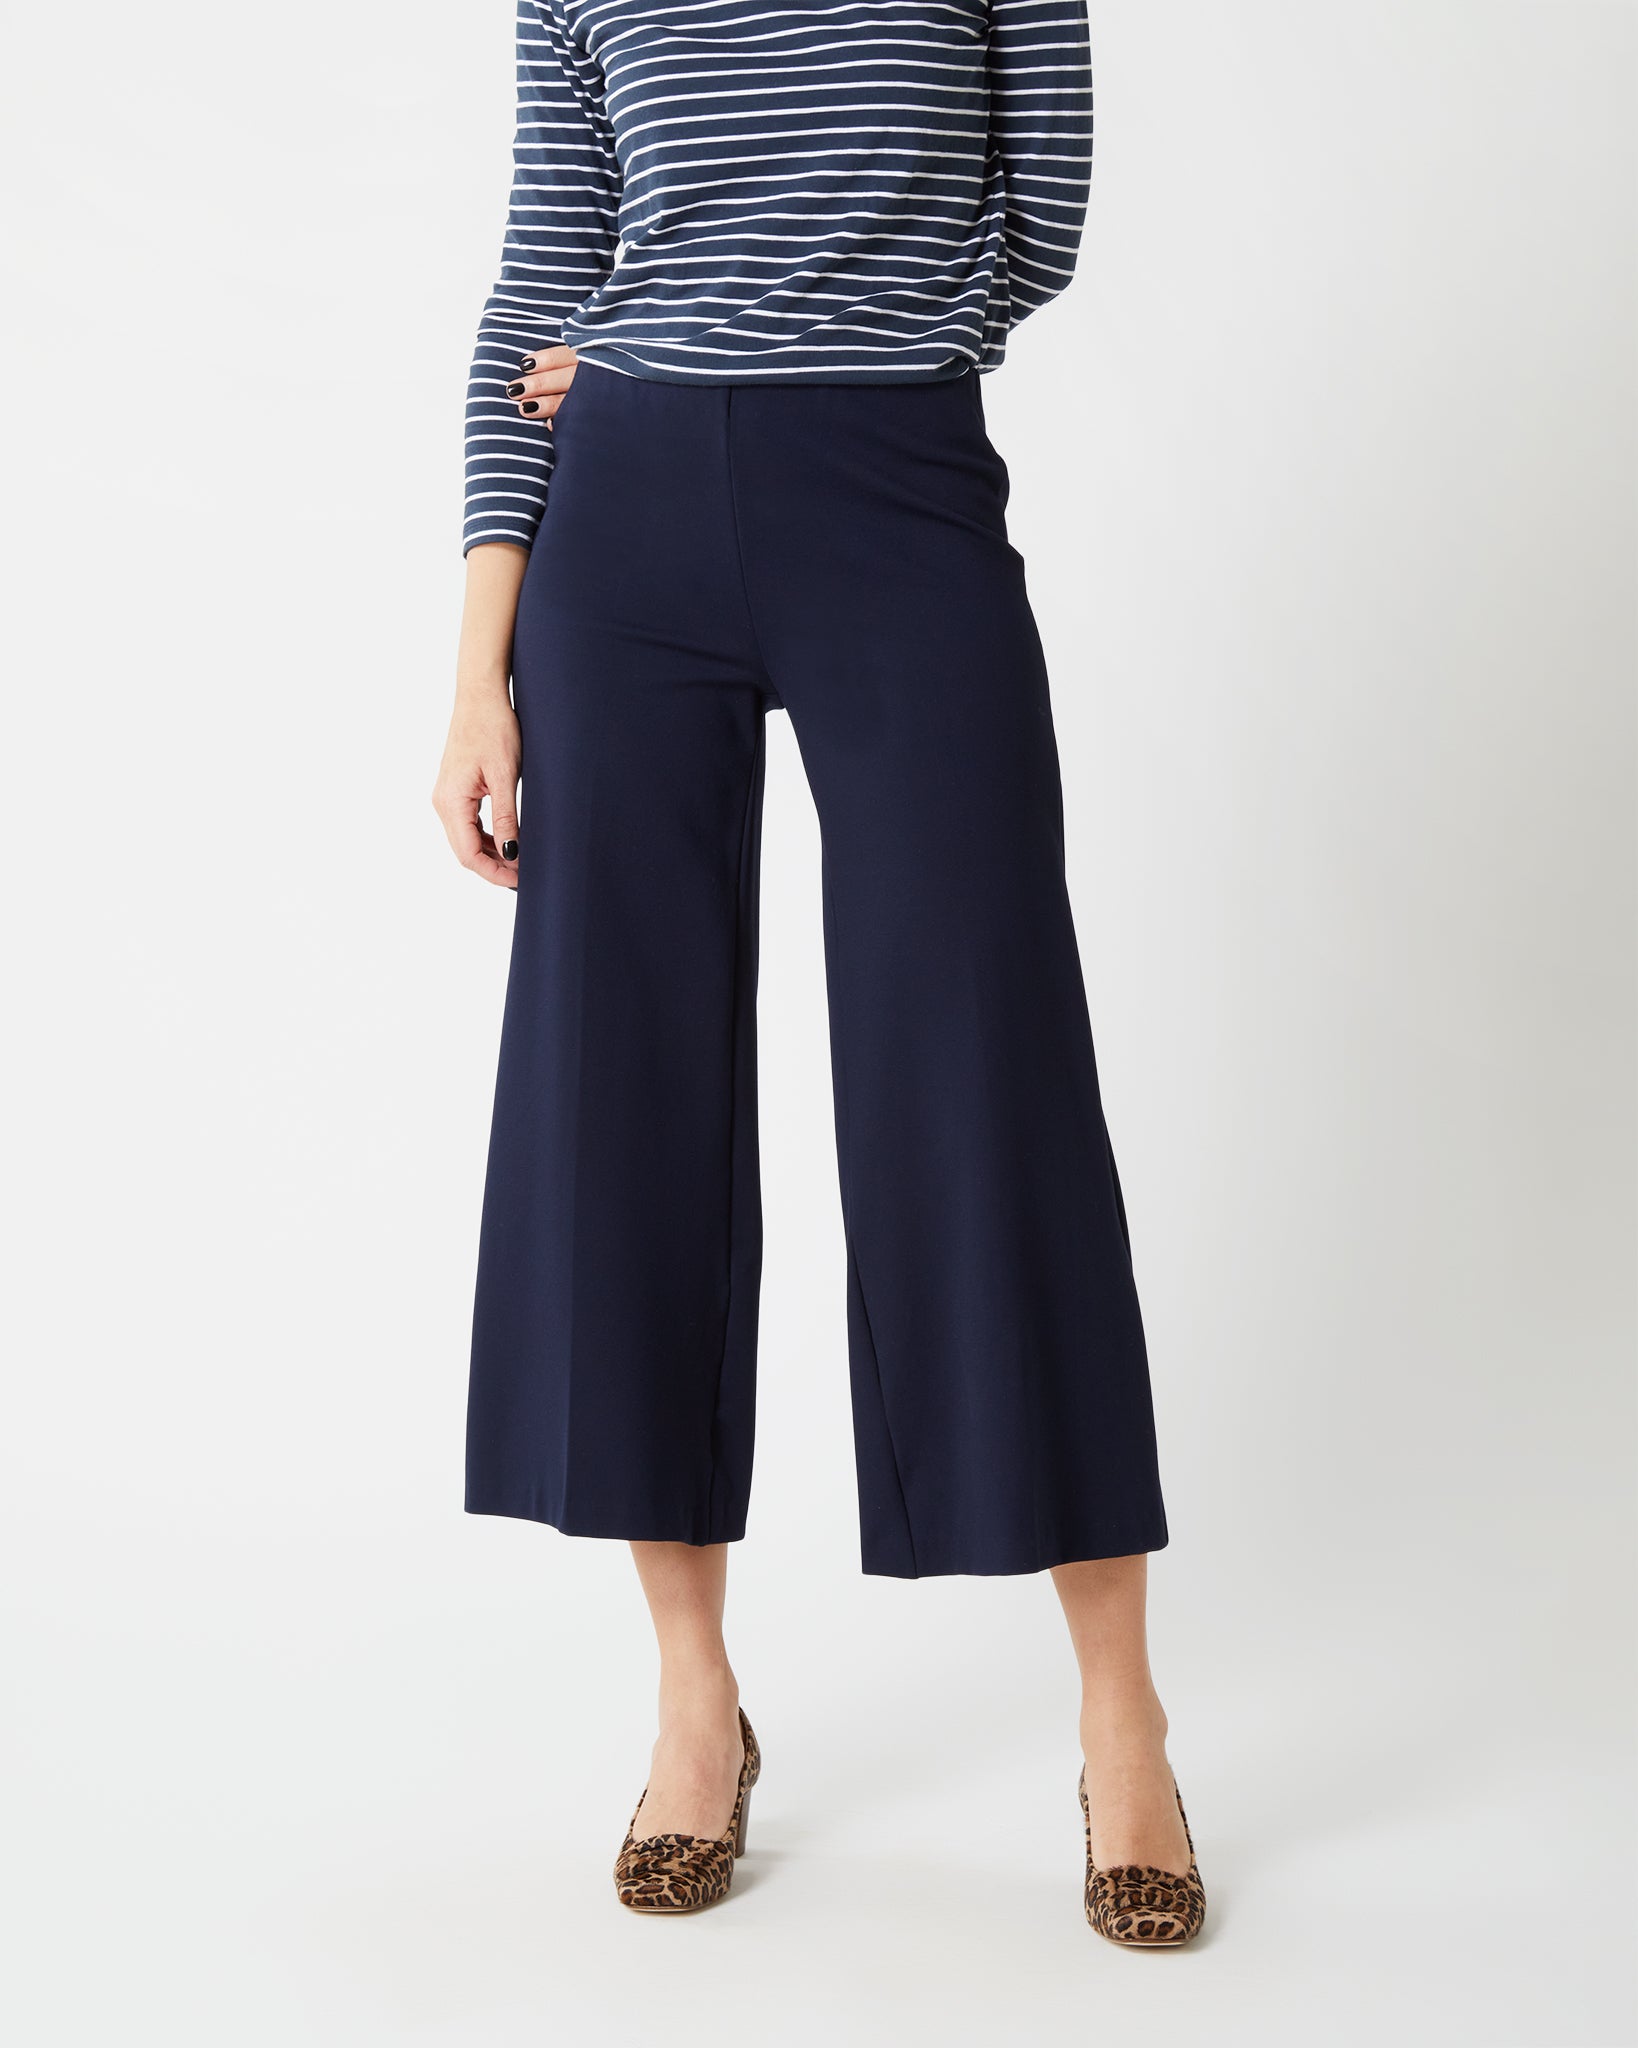 Faye Wide-Leg Cropped Pant in Navy Ponte Knit | Shop Ann Mashburn